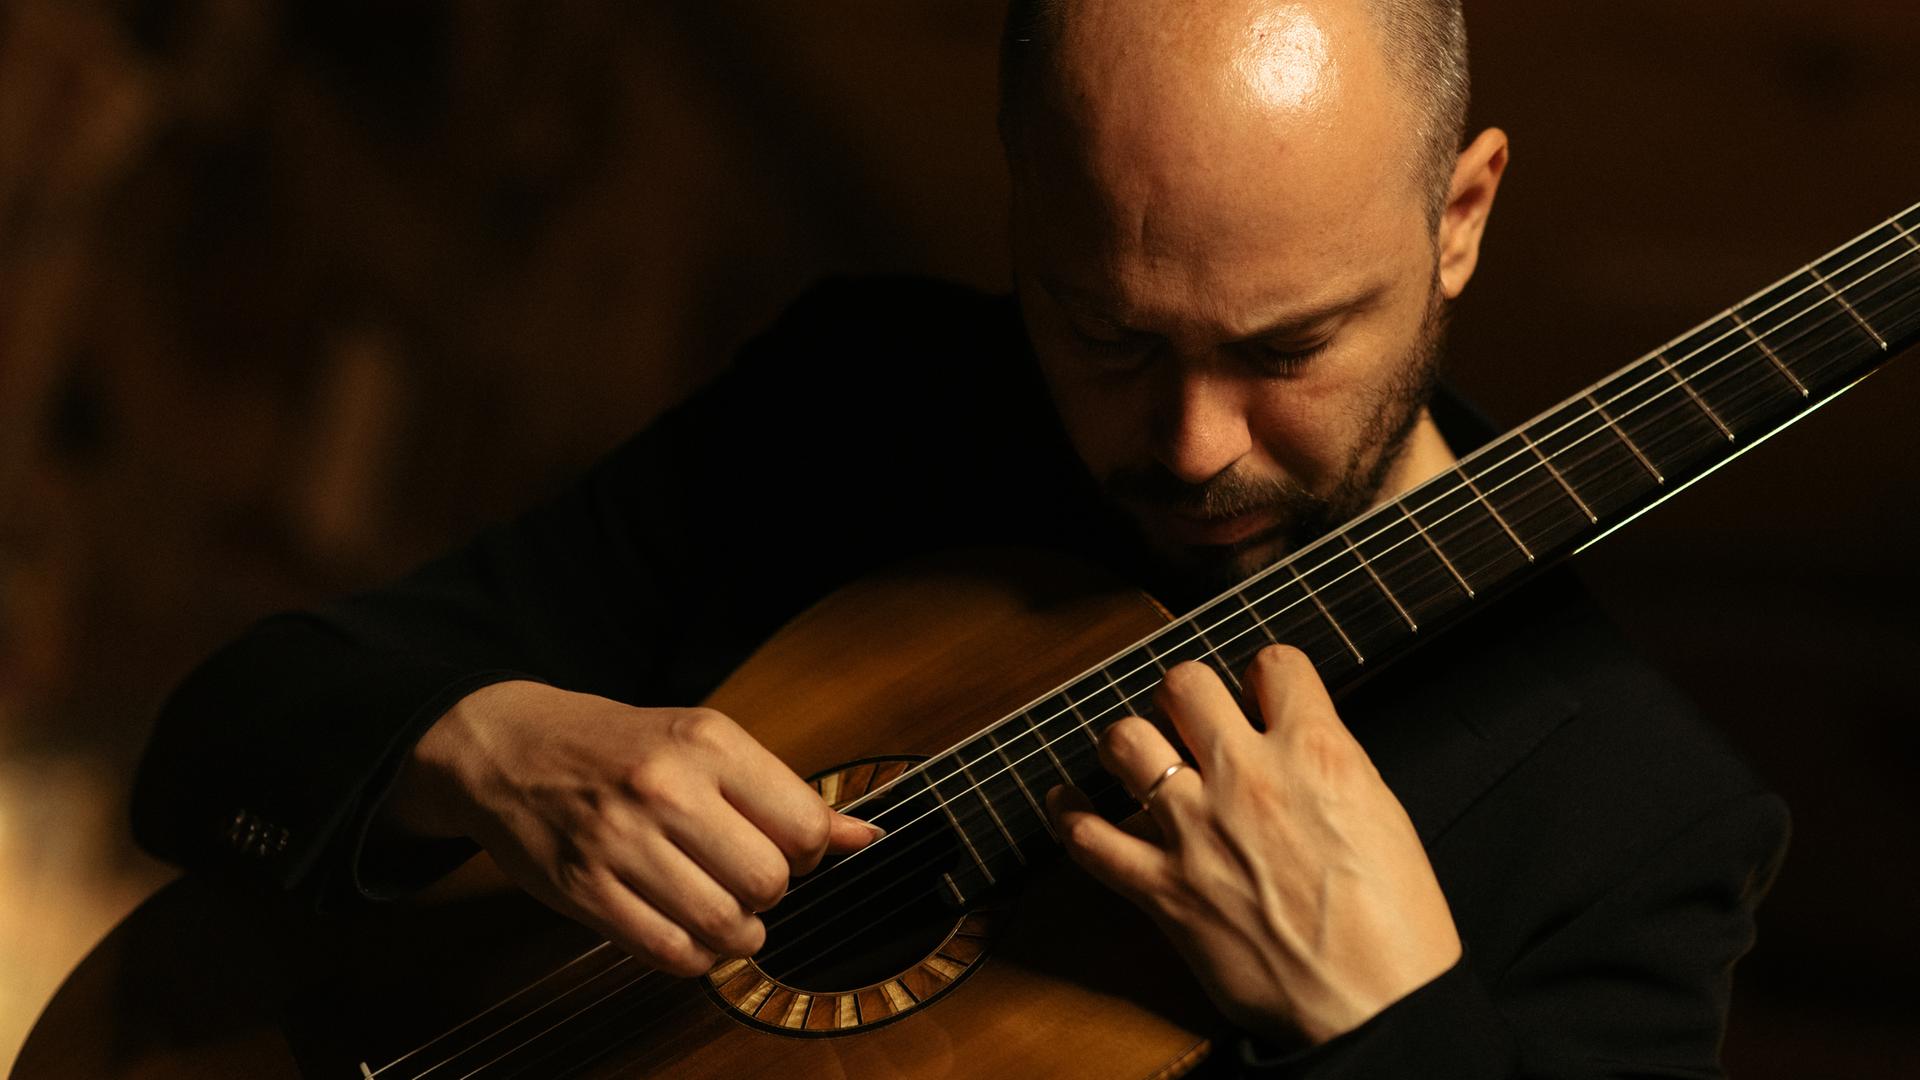 Ein Mann spielt Gitarre, er beugt seinen Kopf dabei über das Instrument. Das Foto ist in dunklen Tönen gehalten.